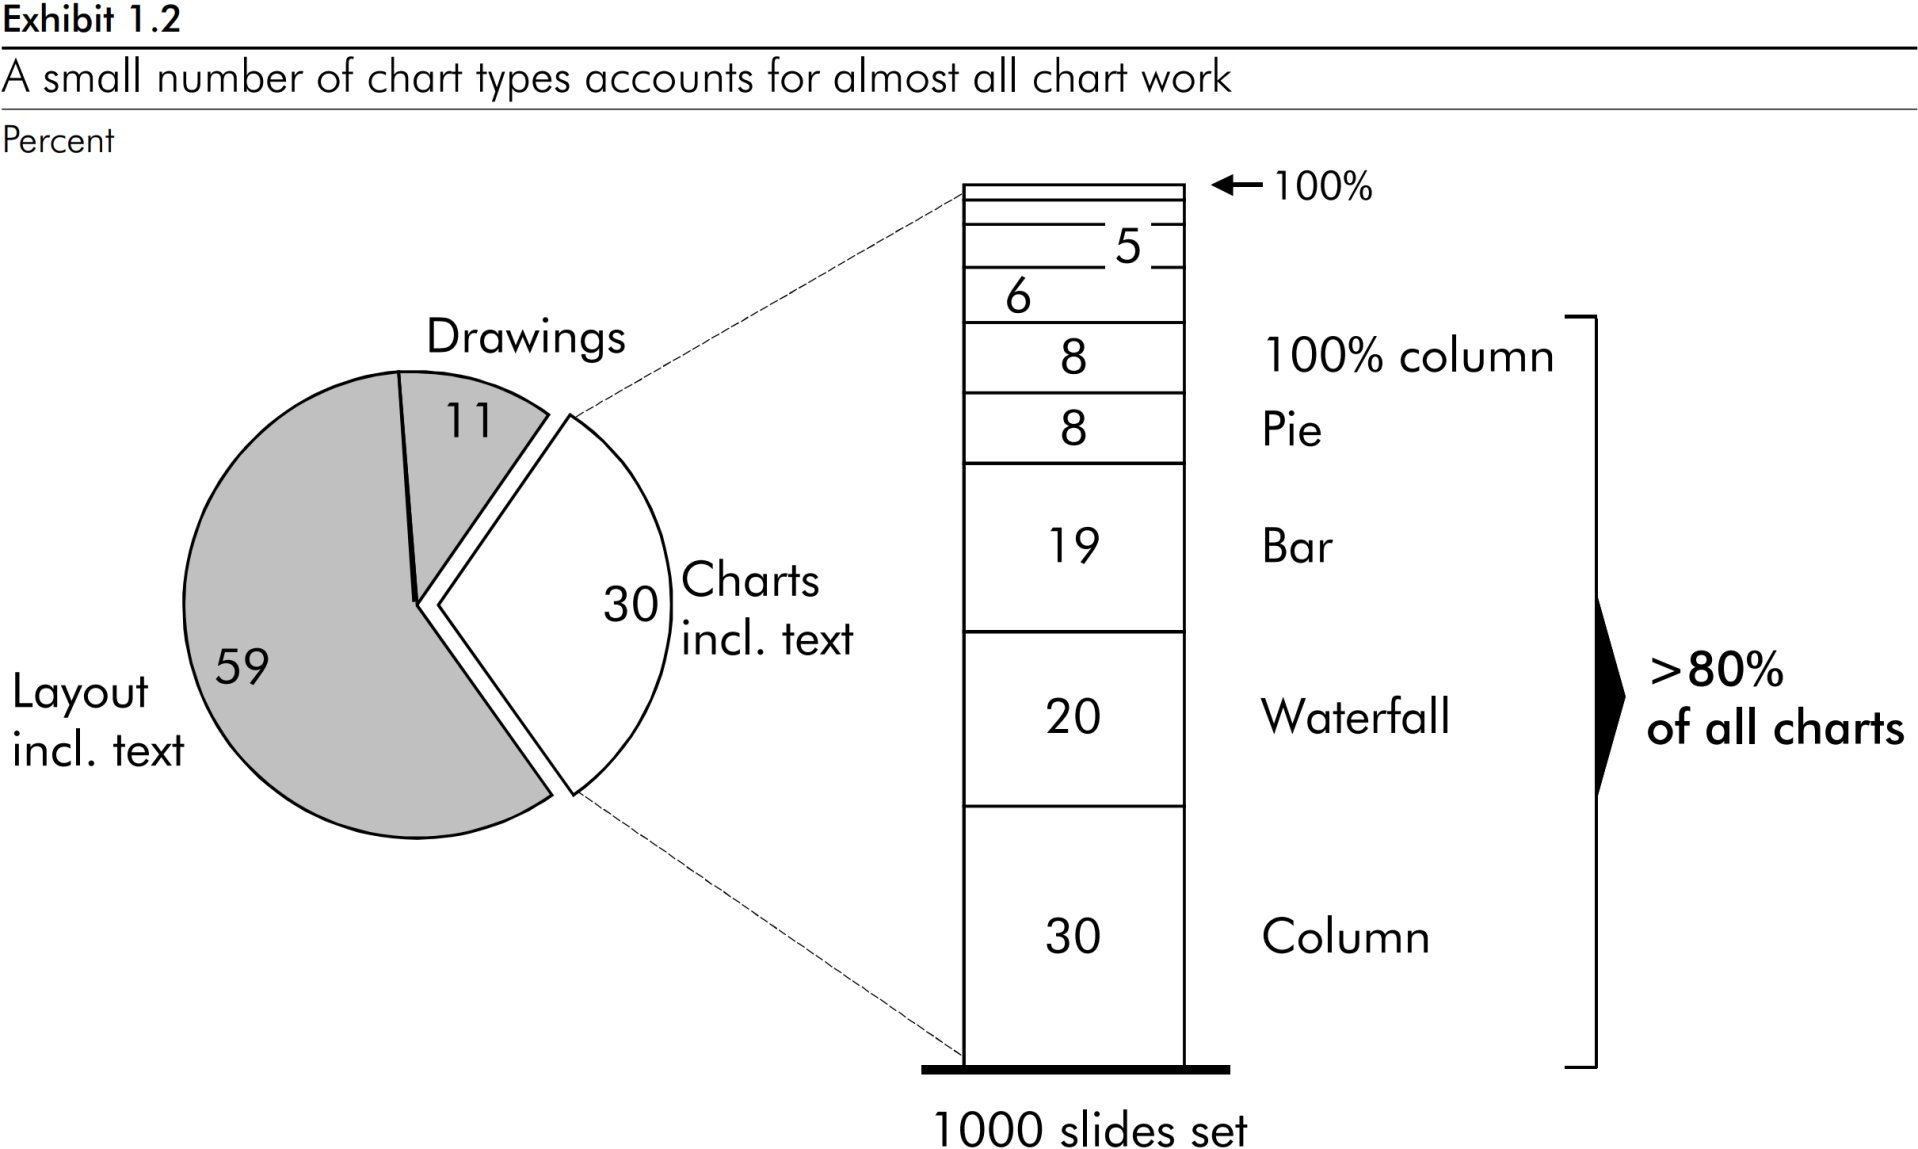 모든 차트 작성 작업의 85%가 5가지 차트 유형, 즉 비율 세로 막대형, 파이, 막대, 폭포 및 세로 막대형만을 사용하여 수행되었음을 보여주는 파이 차트.